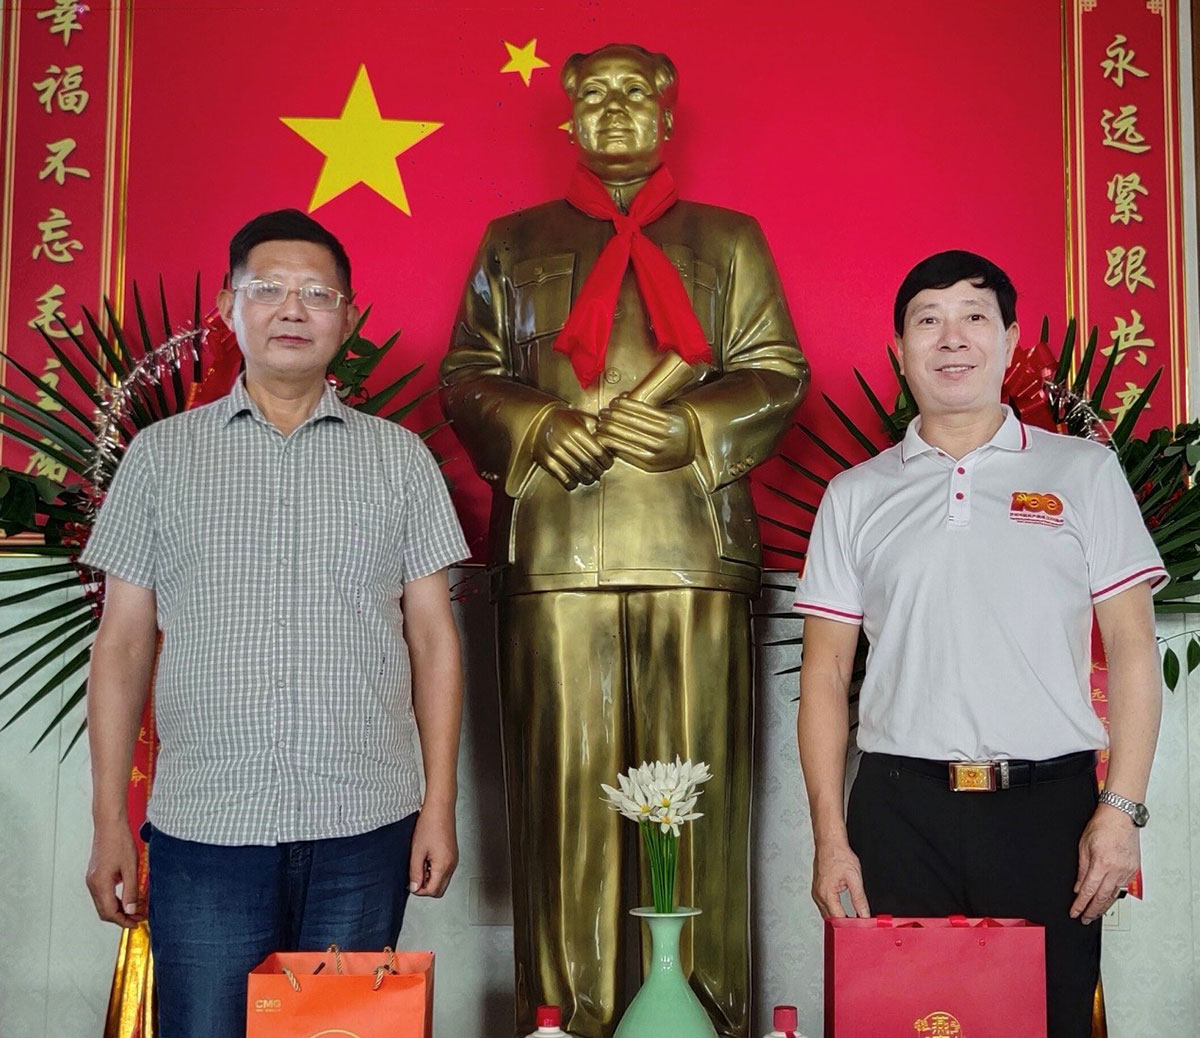 华夏文明欢乐行组委会举办纪念毛主席逝世46周年活动